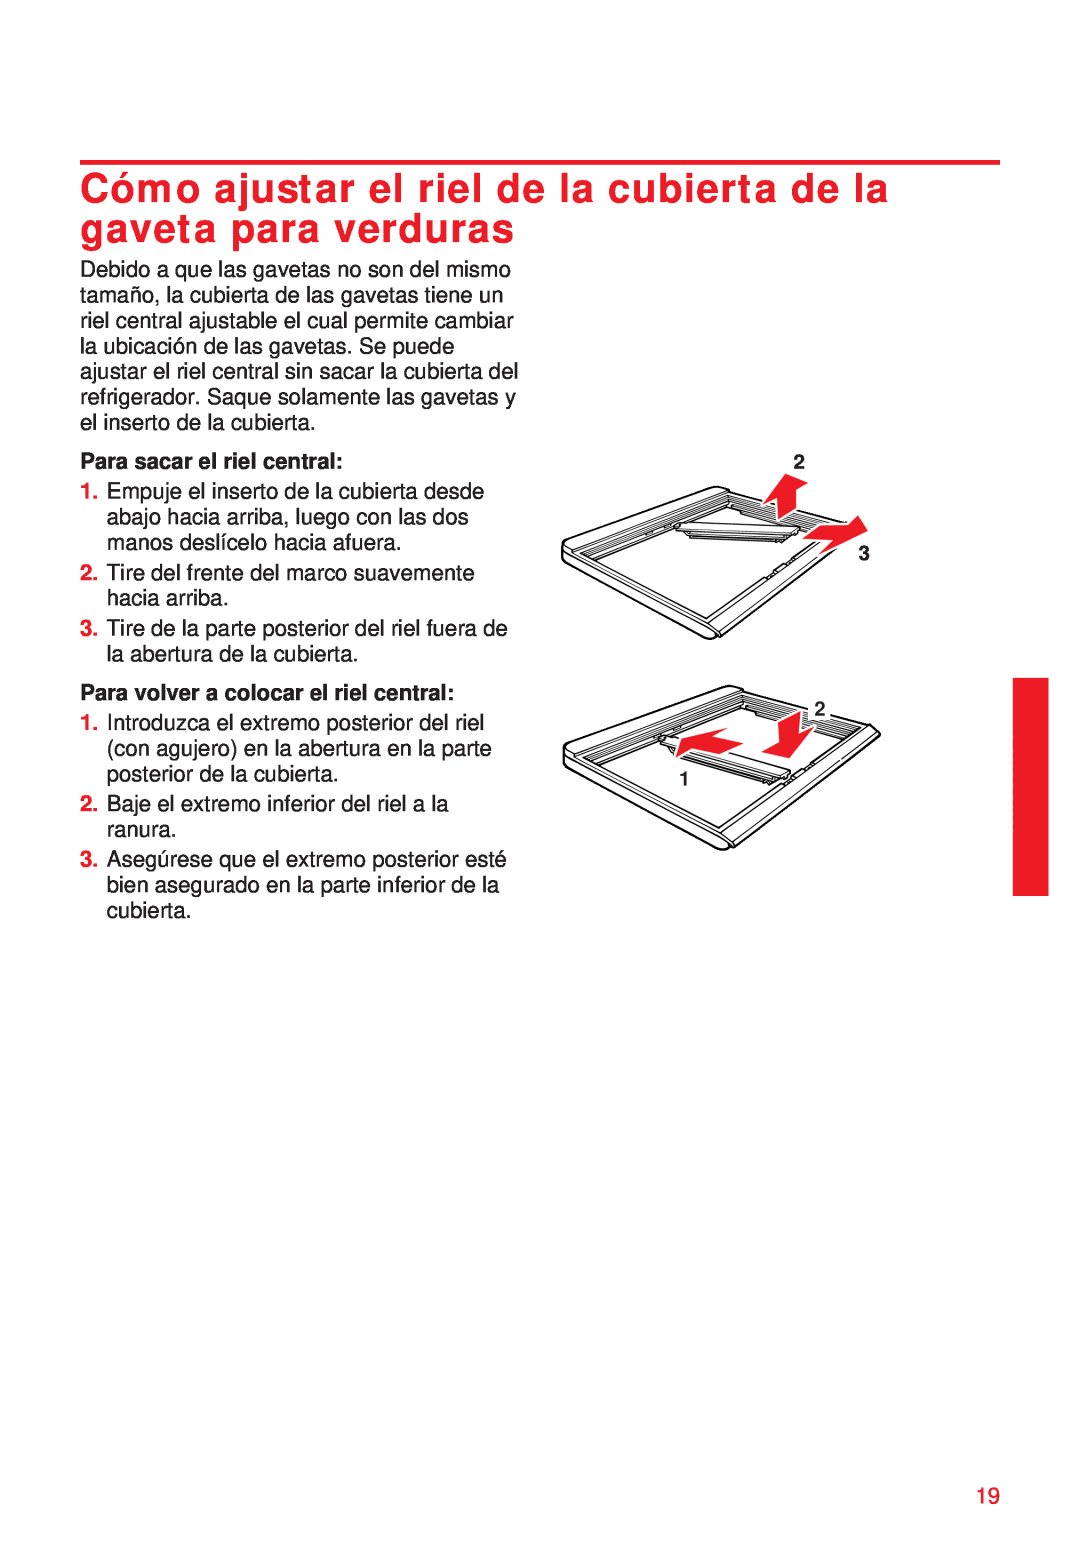 Whirlpool 2195258 manual Cómo ajustar el riel de la cubierta de la gaveta para verduras, Para sacar el riel central 